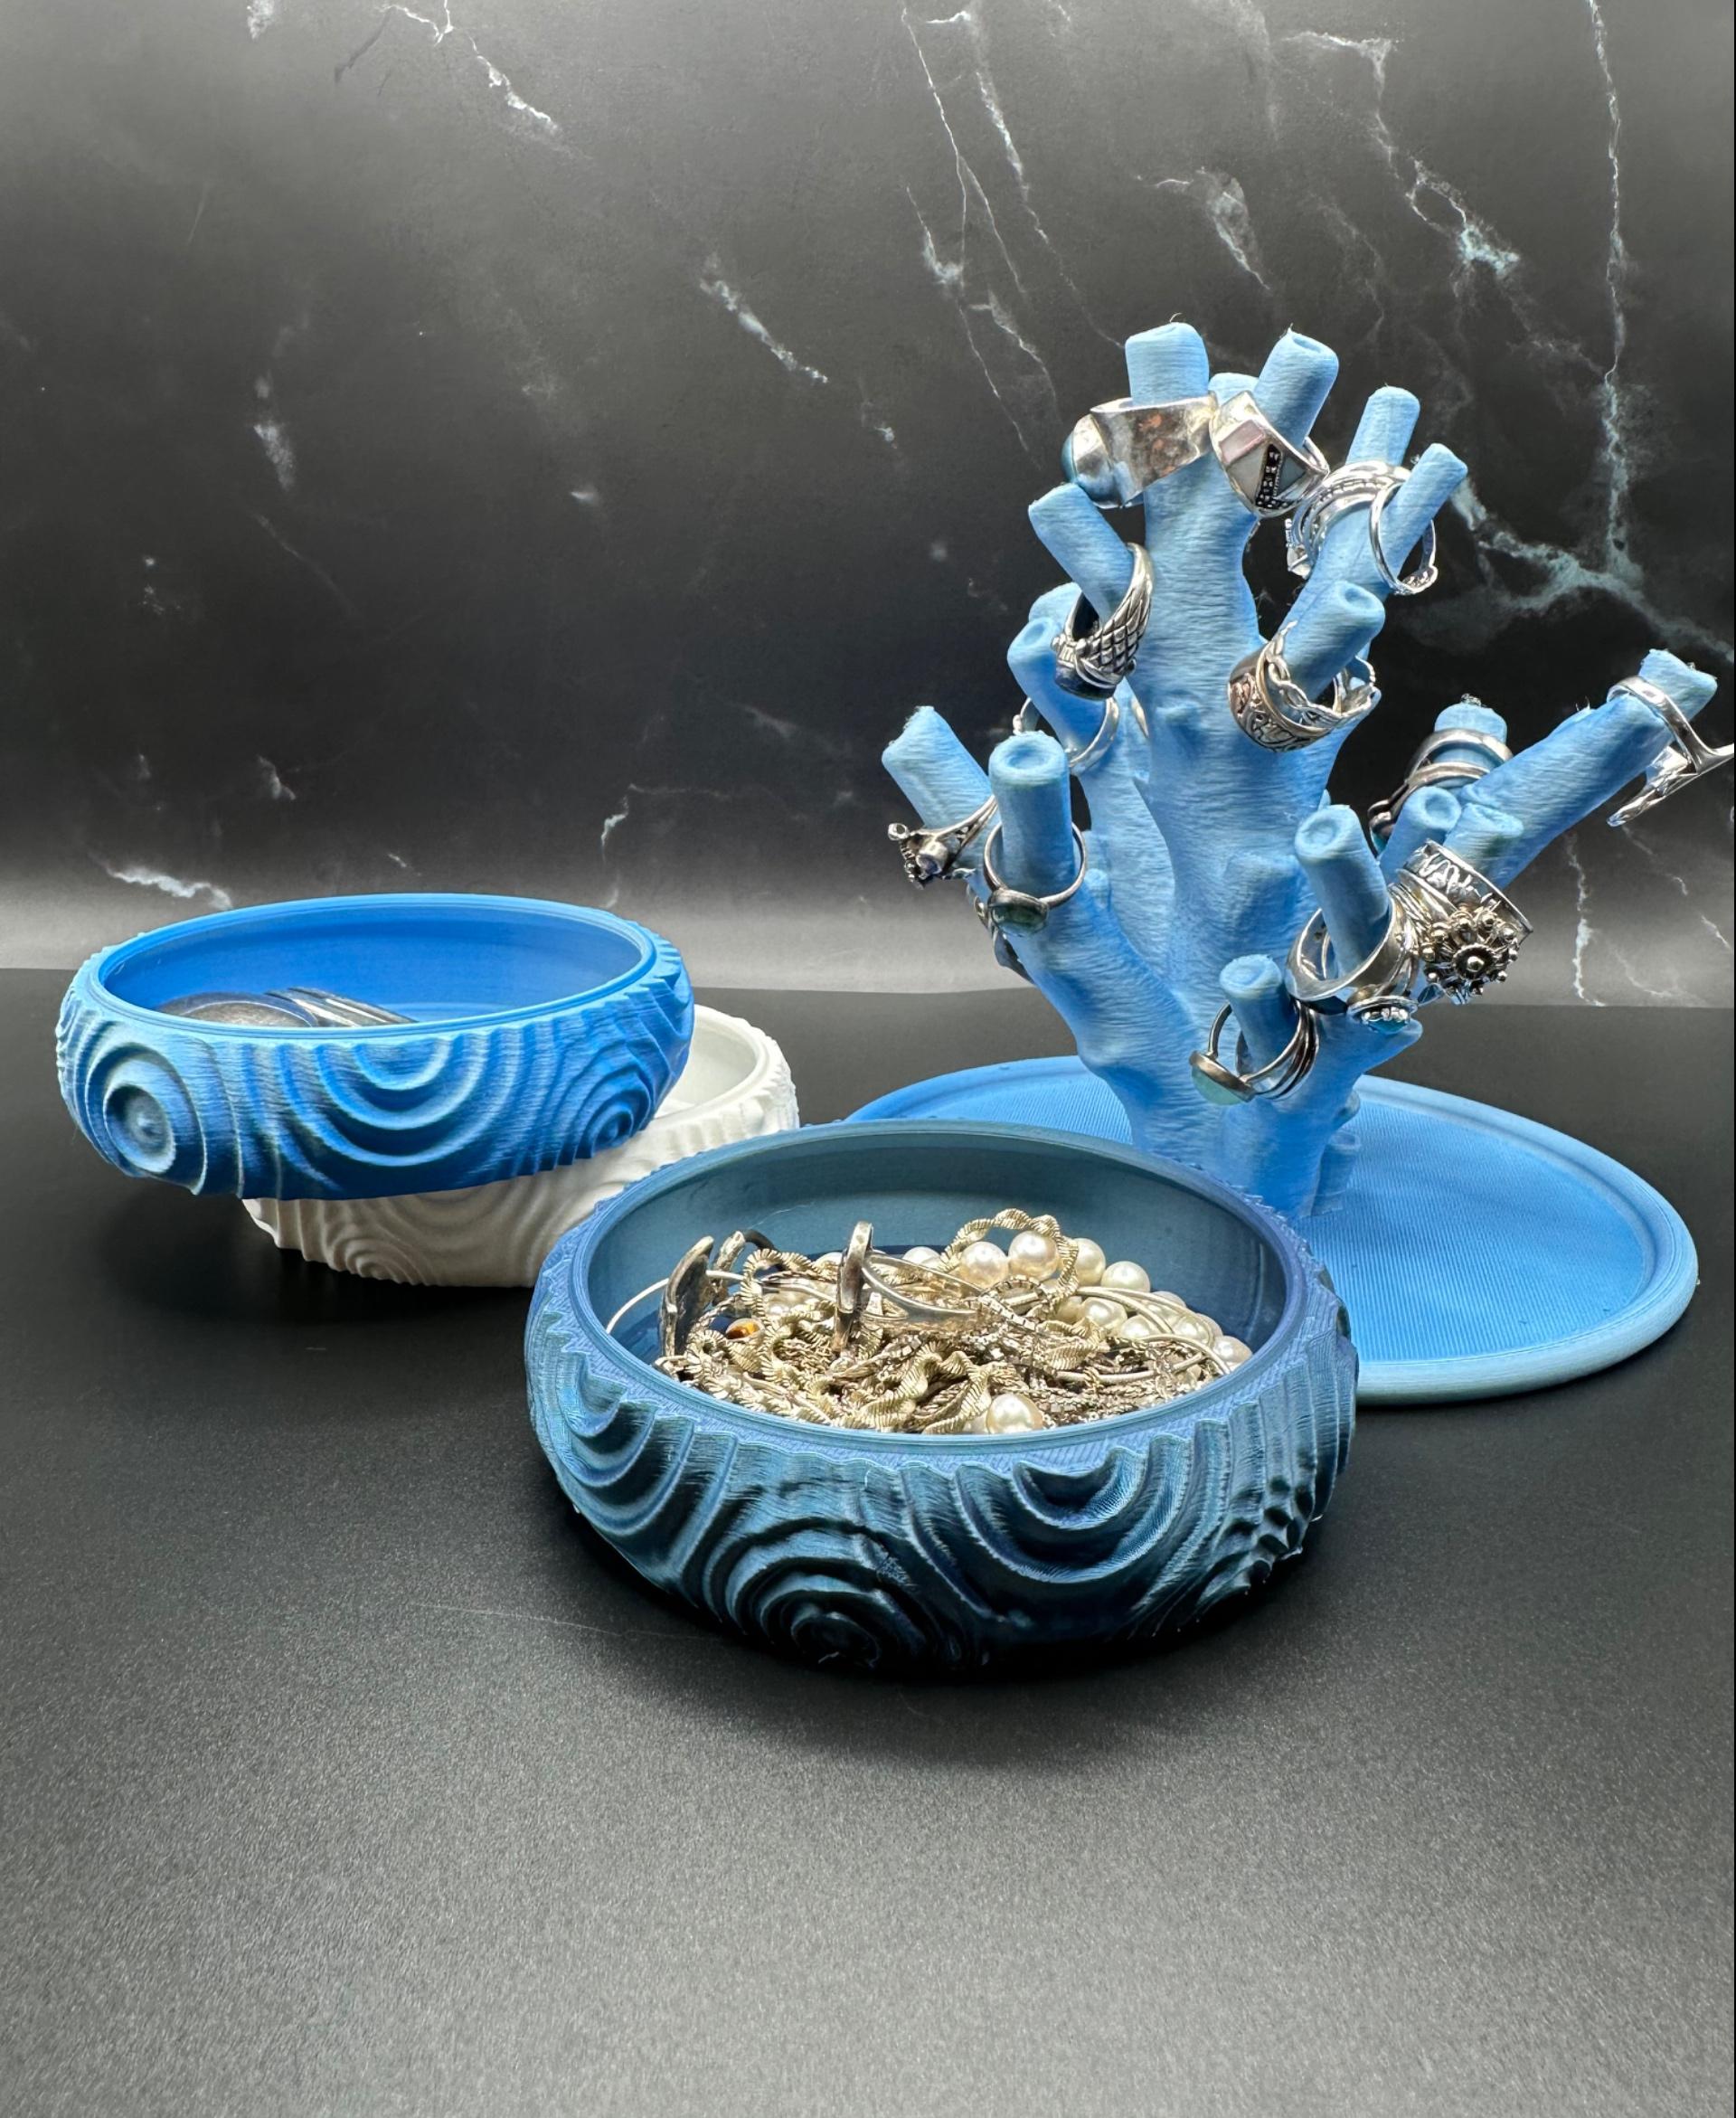 Stackable bowl “waterdrop” 3d model